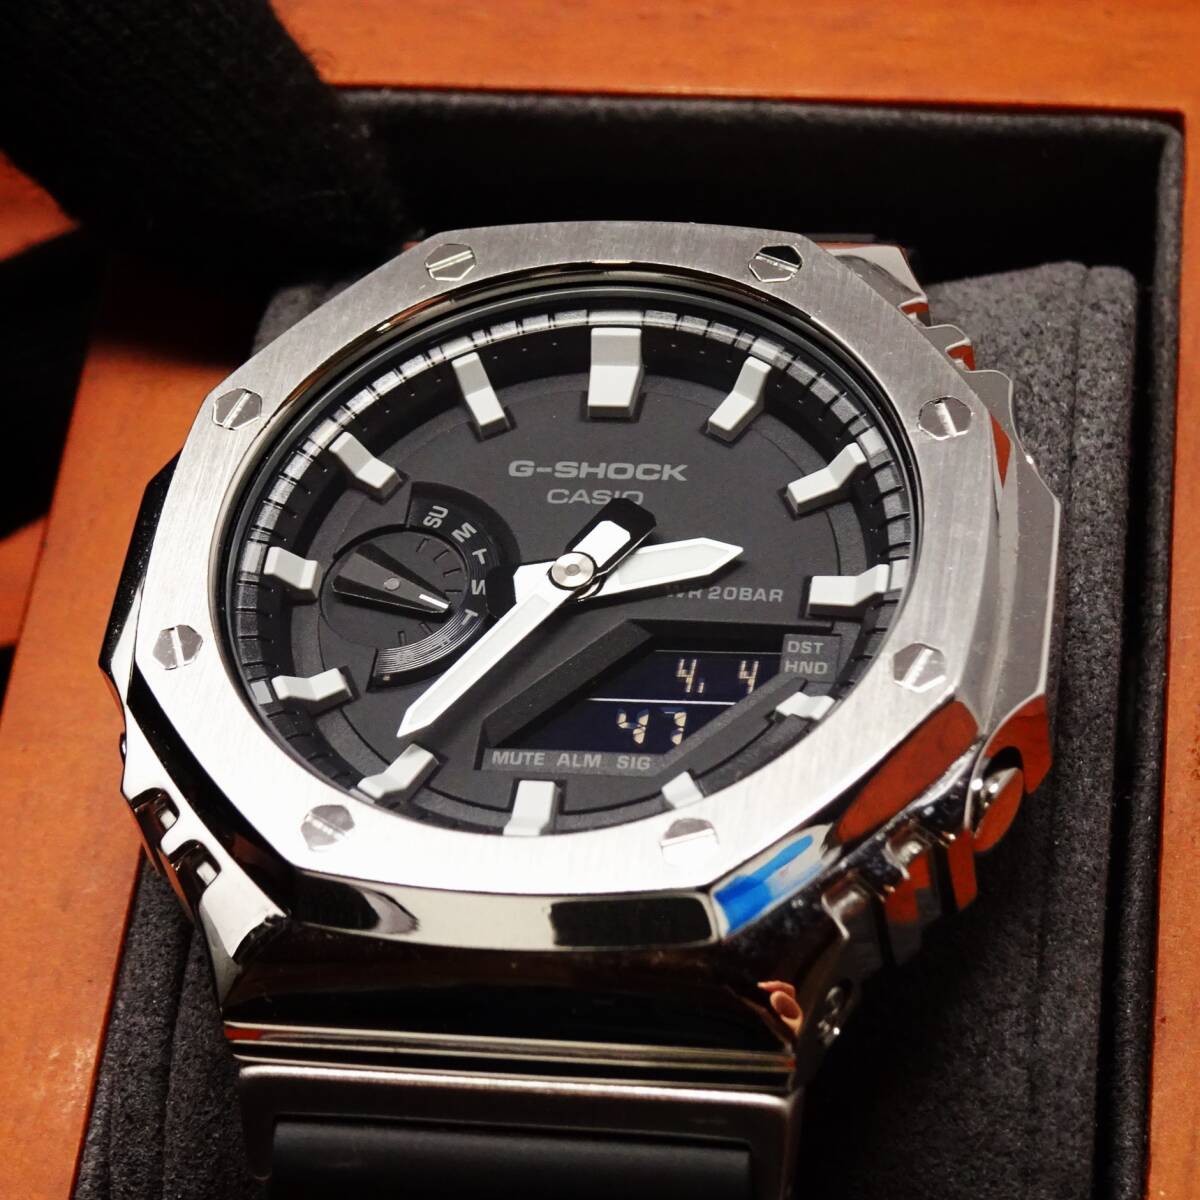 送料無料・新品・Gショックカスタム腕時計本体付きGA2100海外ステンレス製シルバーベゼルシリコンラバーベルトモデルメンズ・カシオーク